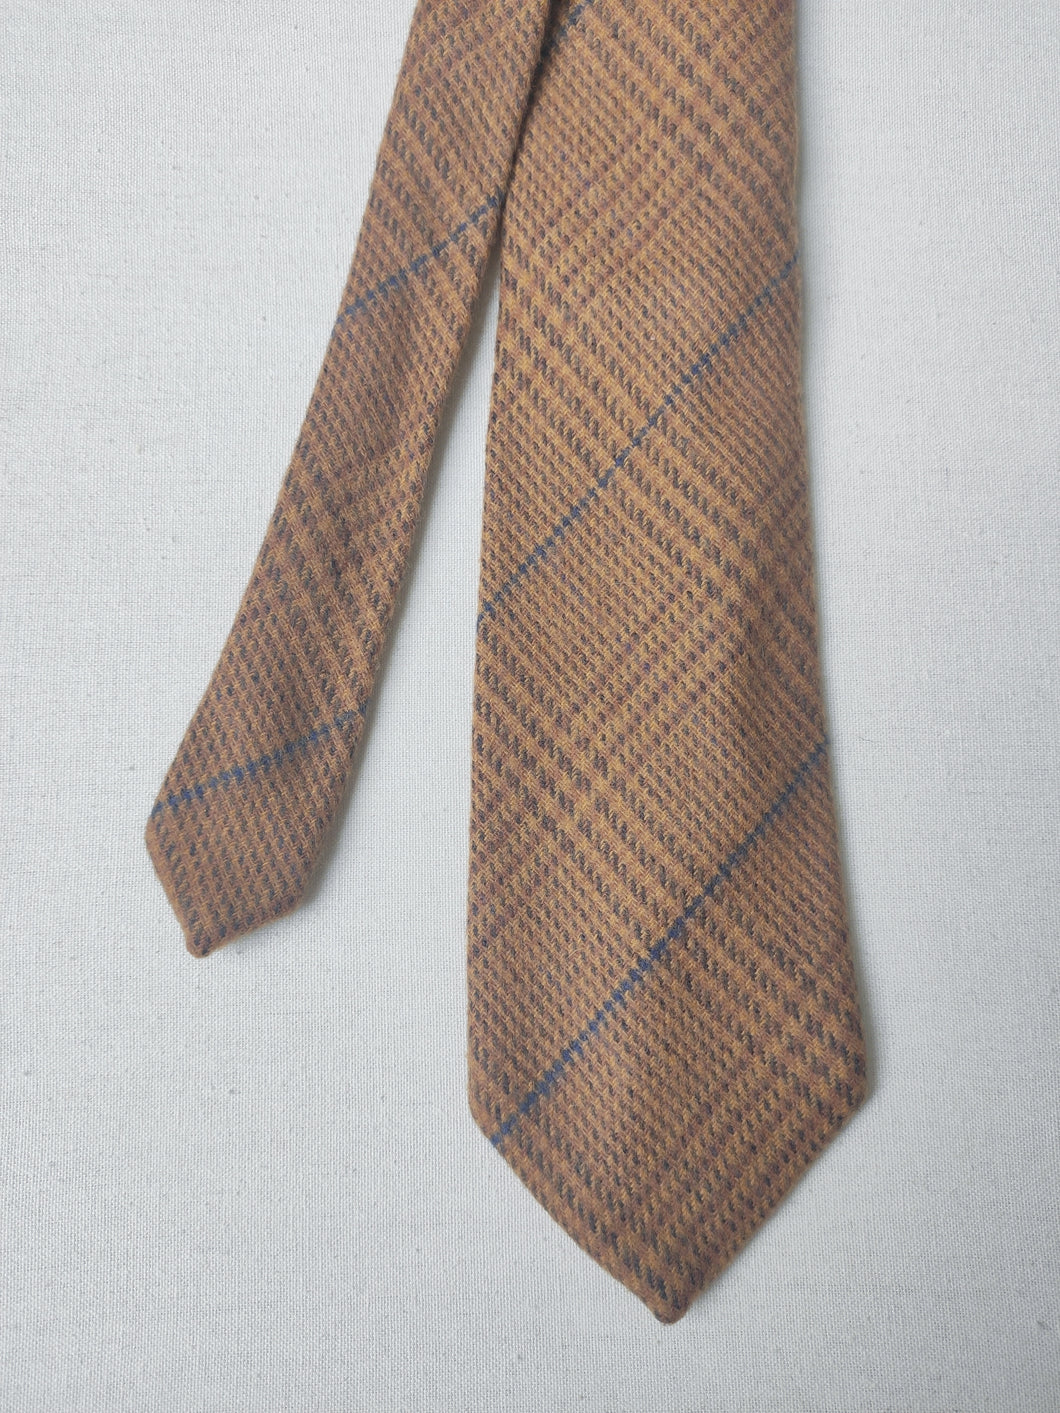 Cravate vintage en laine d'agneau et cachemire Prince de Galles Made in Italy